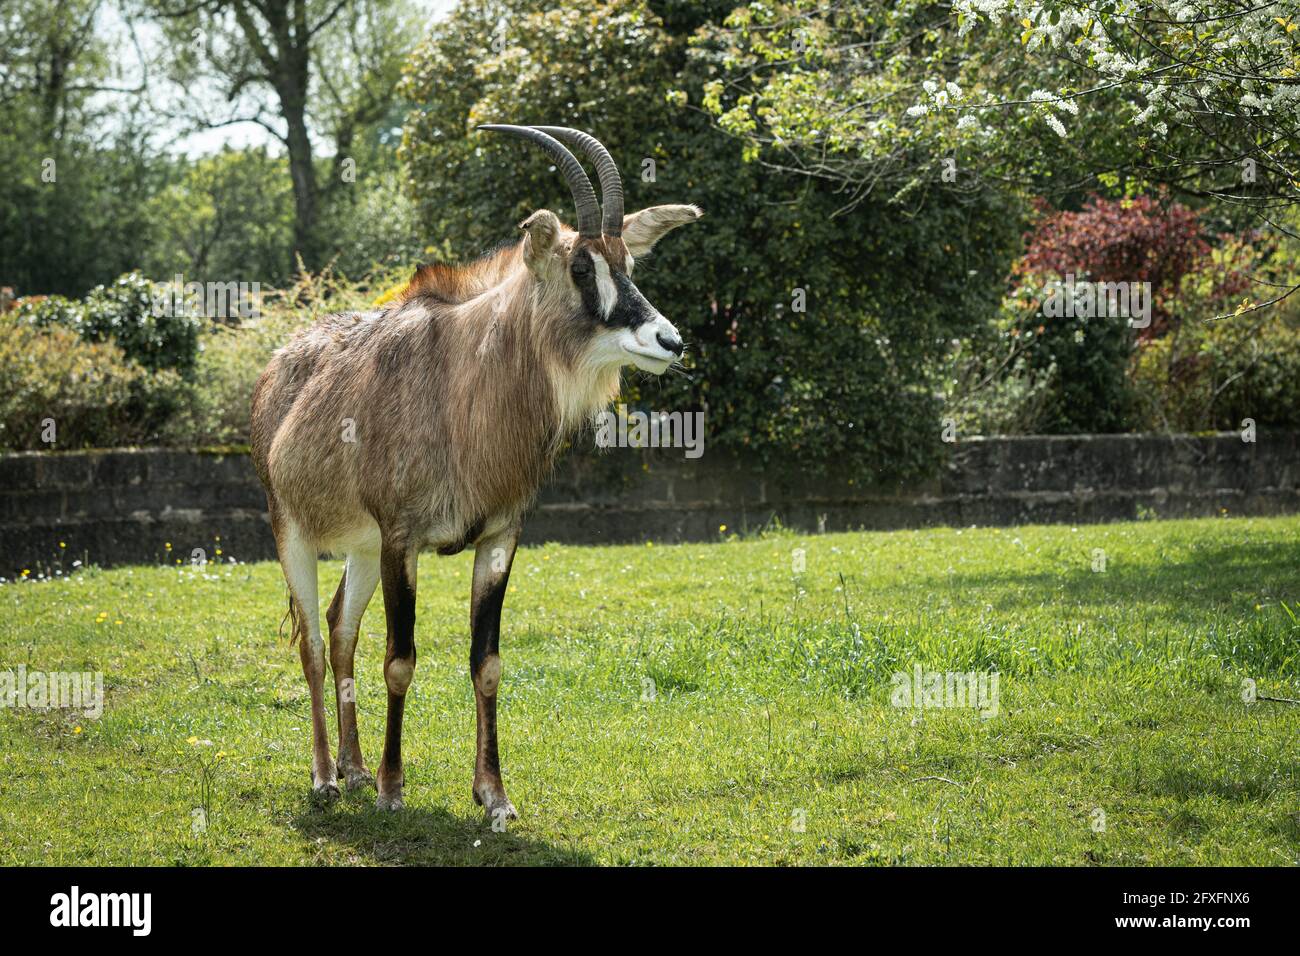 Ein Porträt einer Roan-Antilope, Hippotragus equinus. Er steht auf dem Grasfeld und schaut nach rechts Stockfoto